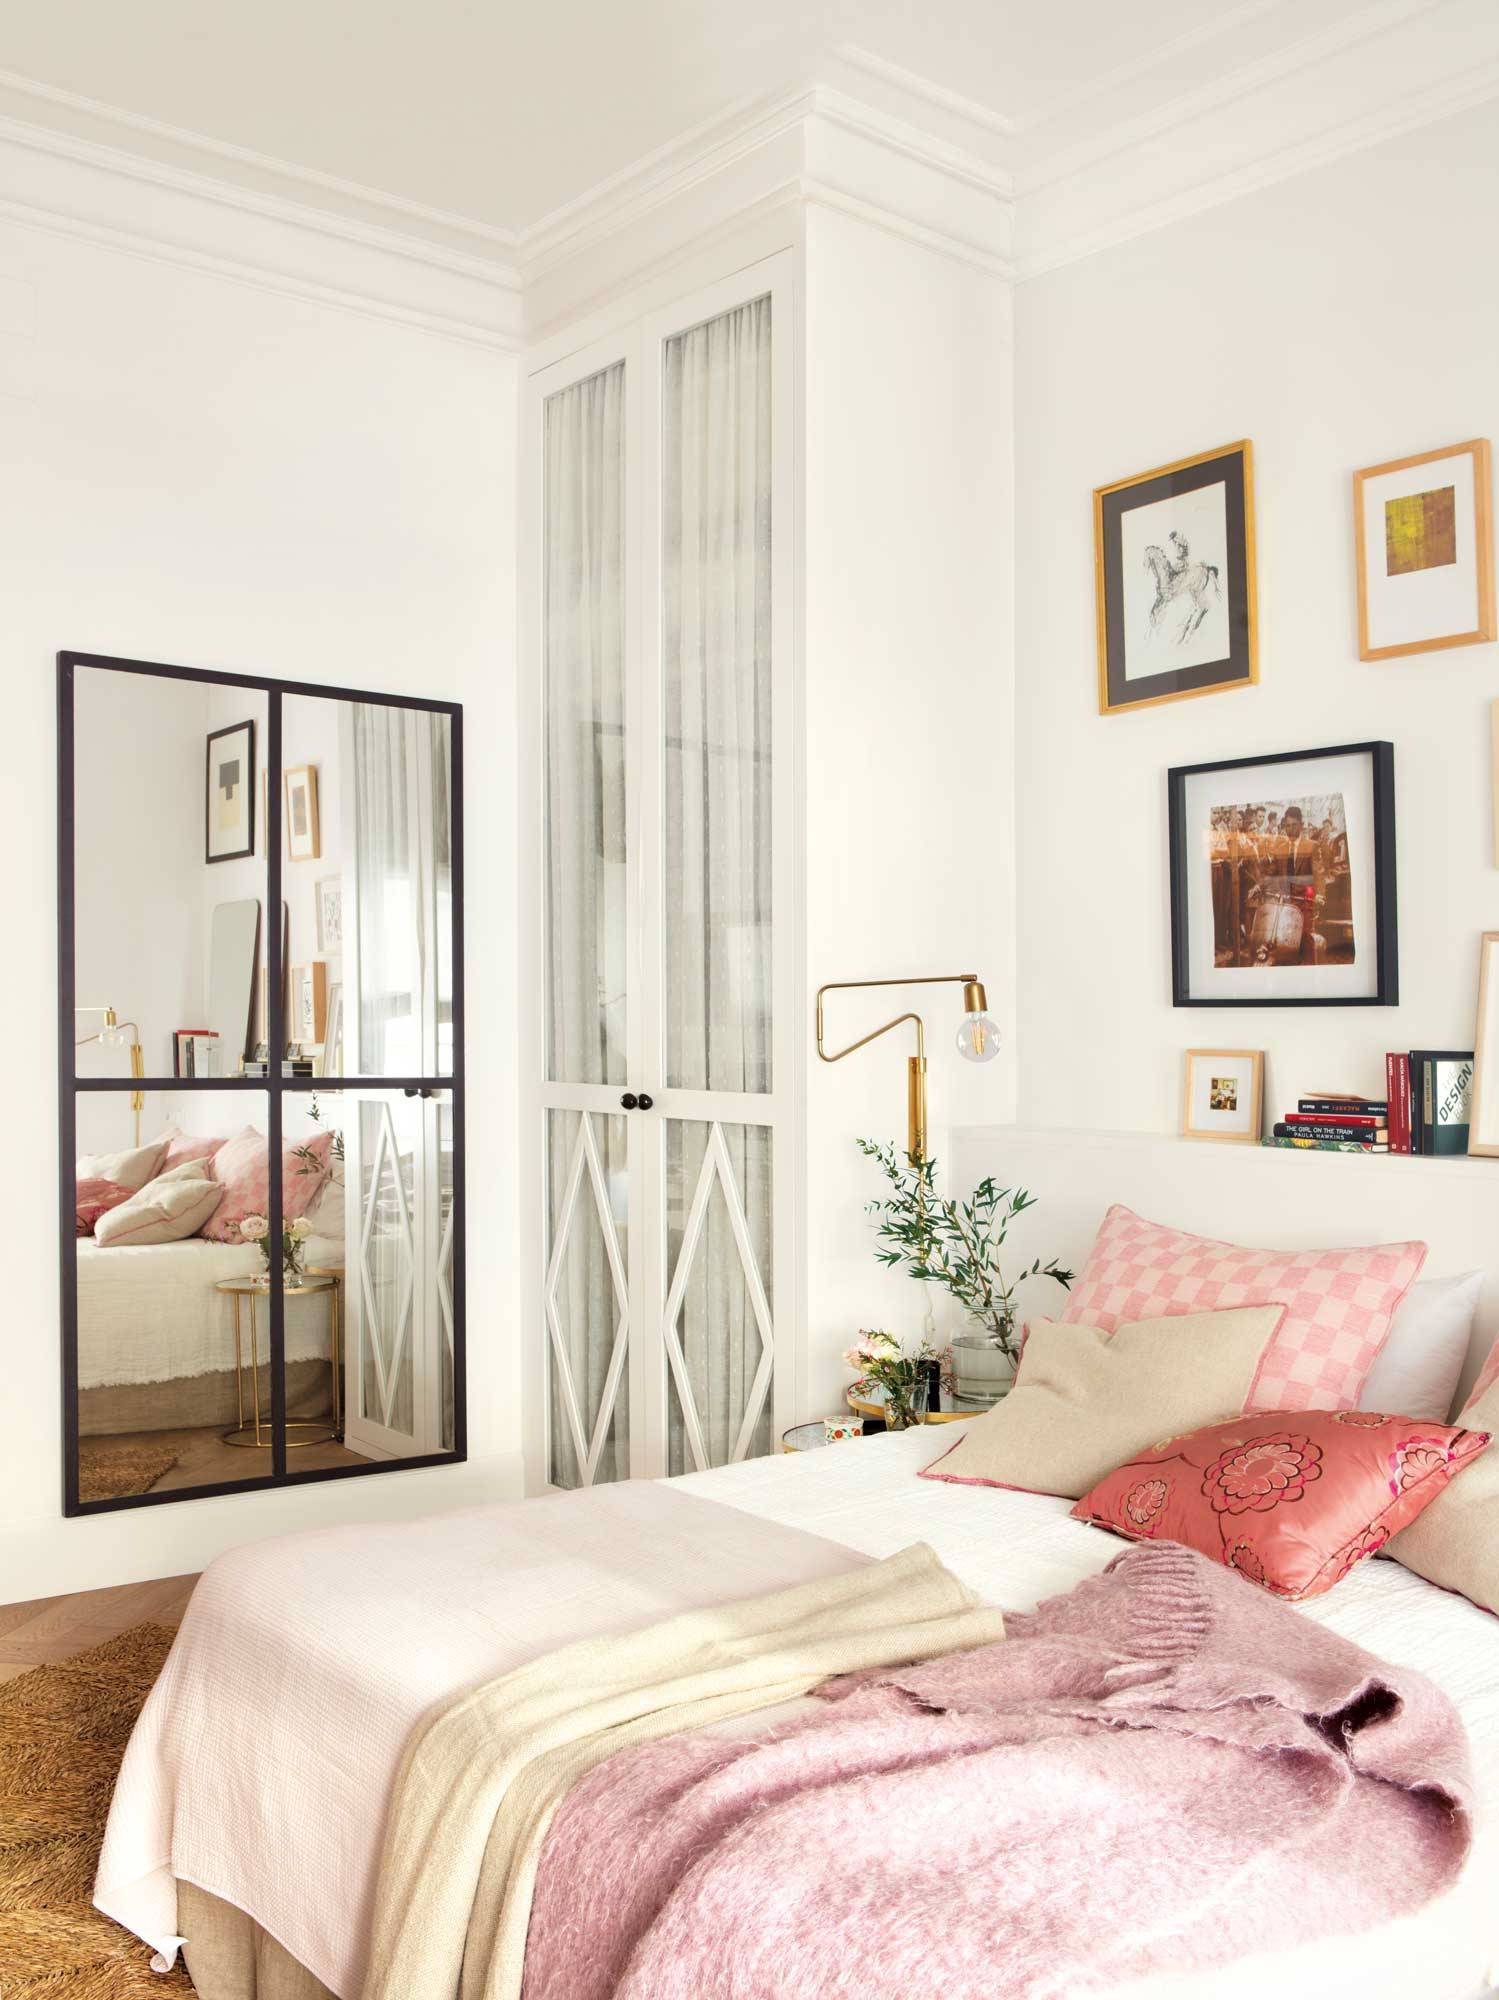 Dormitorio juvenil con armario, espejo y cabecero de madera pintado de blanco.